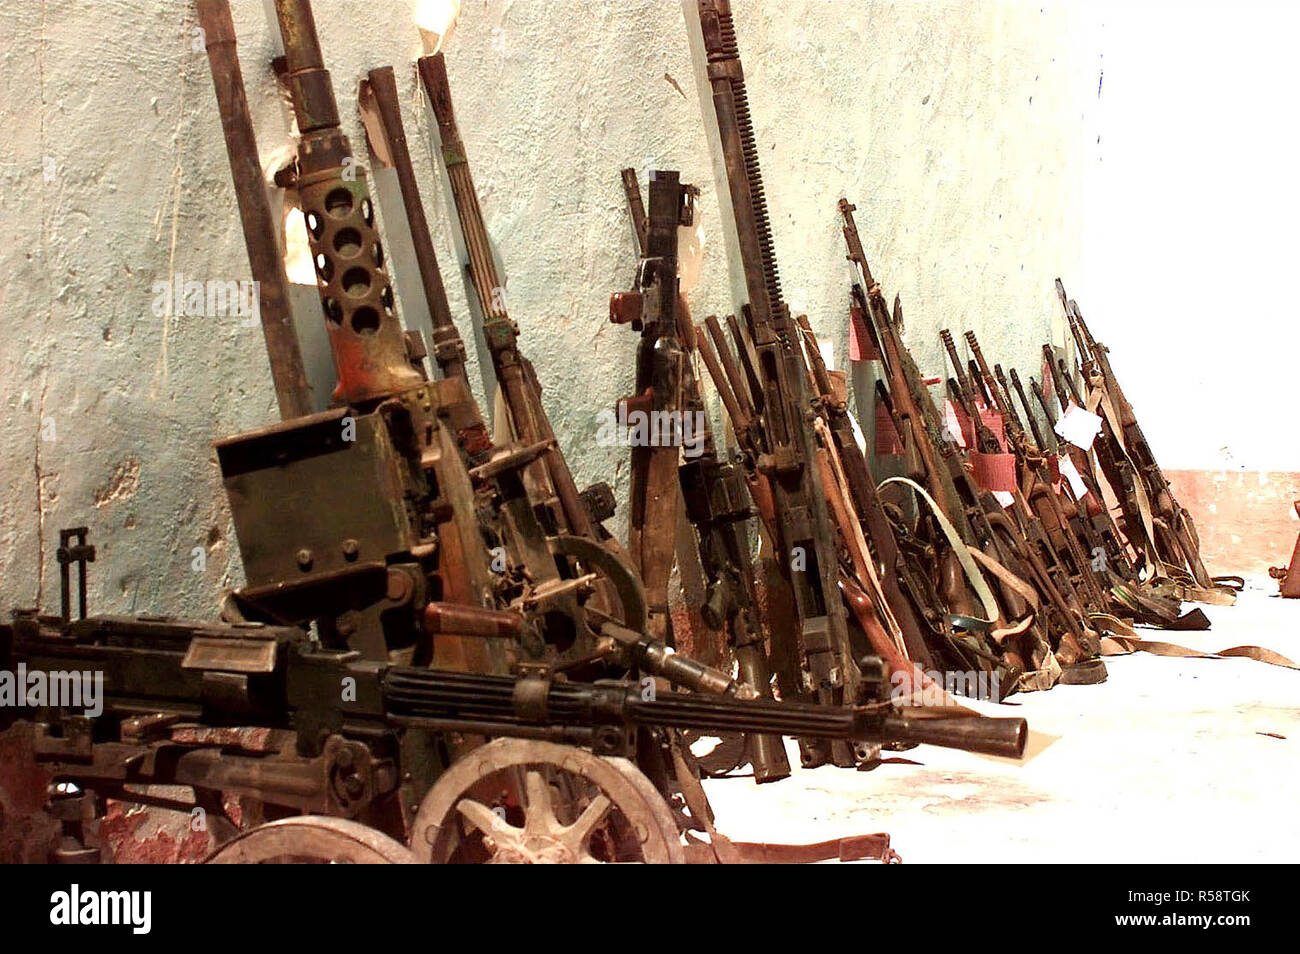 1993 - confisqué les armes somaliens à checkpoint Condor à Marka, en Somalie. Ils sont principalement des petites armes et armes de l'équipage qui sont alignés contre le mur d'un bâtiment. Banque D'Images